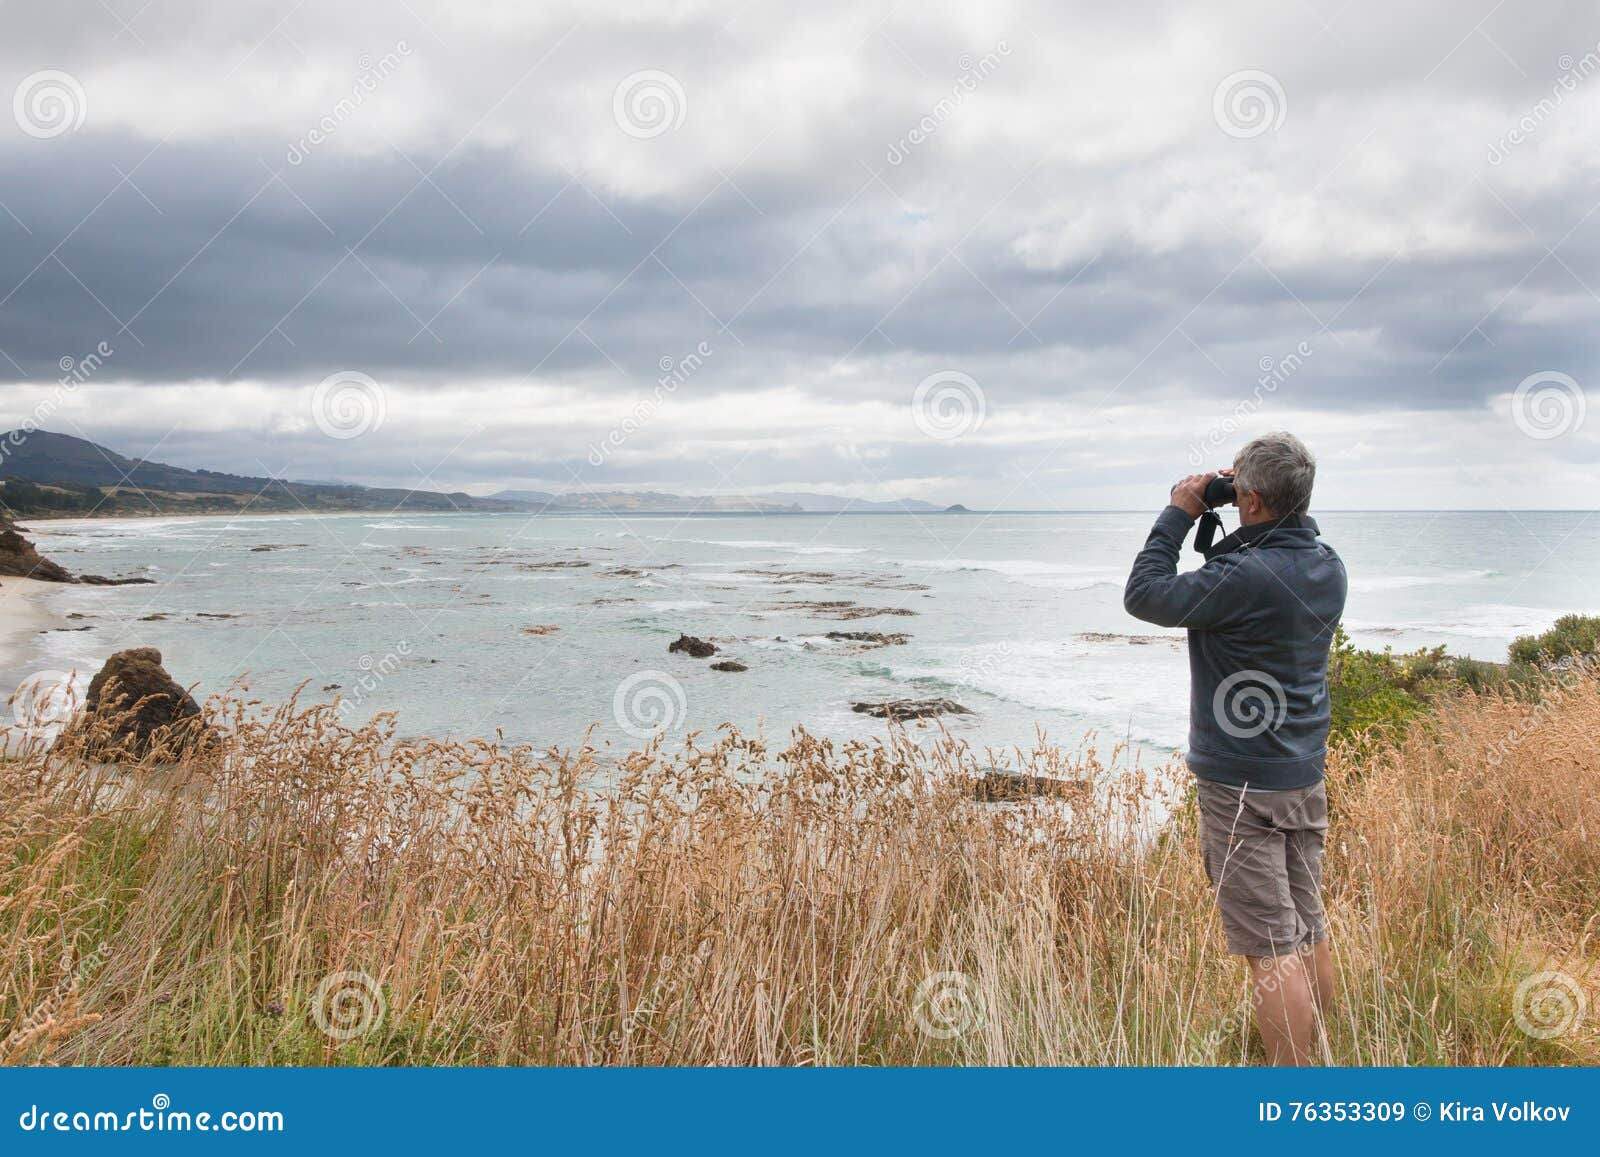 gray haired man looks in binocular across ocean bay